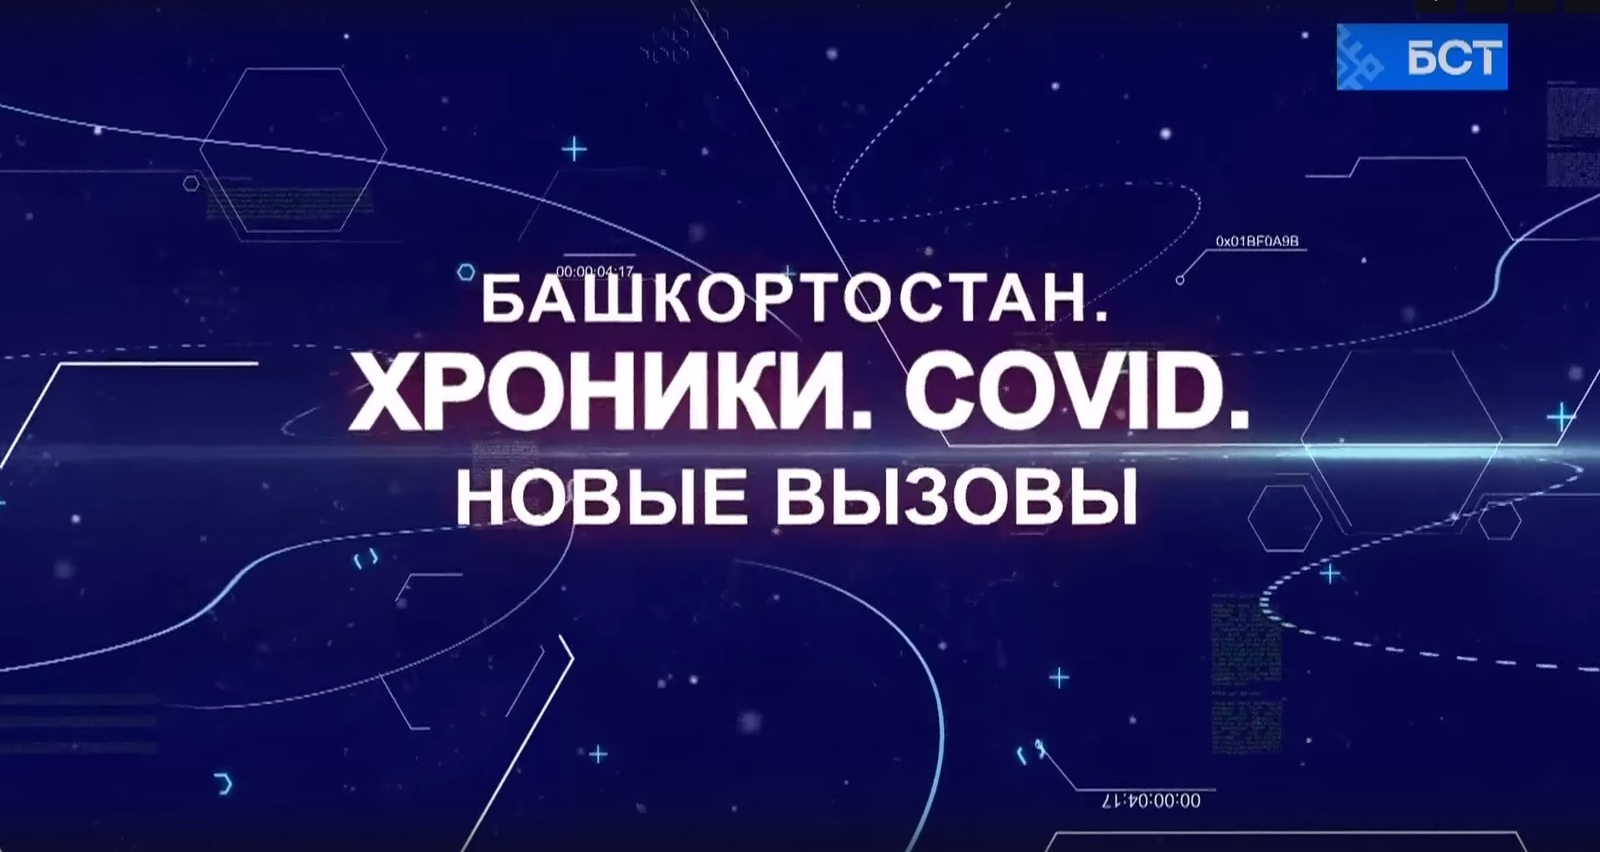 В Башкирии состоялась премьера документального фильма «Башкортостан. Хроники. COVID. Новые вызовы»